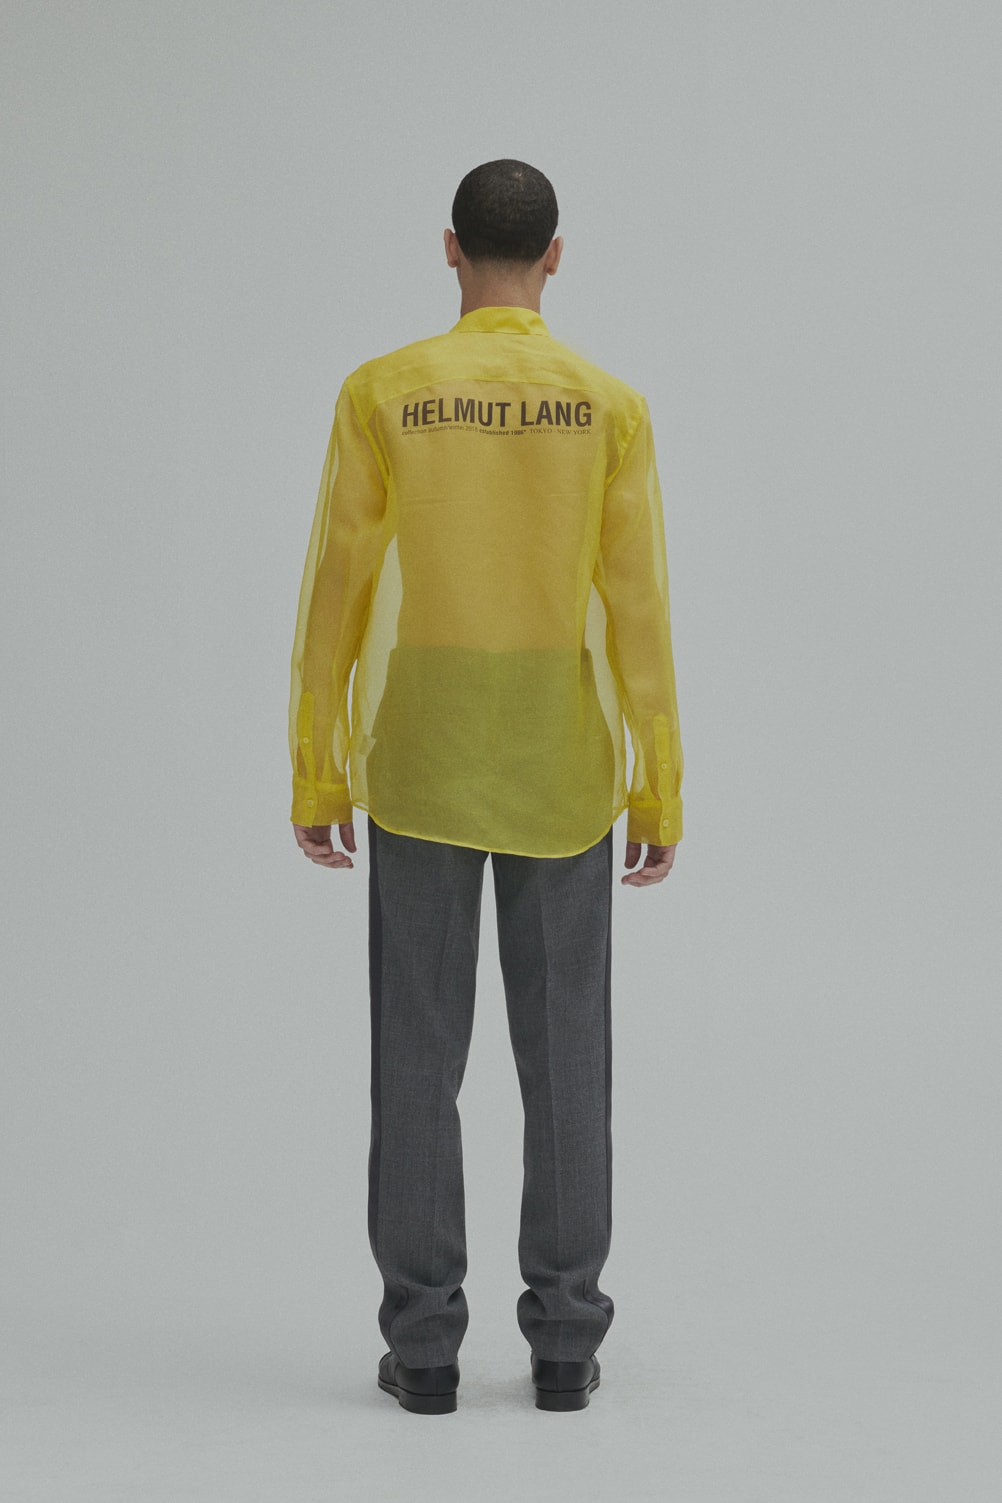 Helmut Lang Fall Winter 2018 Lookbook Jackets Outerwear Shirts Pants Jeans Puffer Sheer Branding Logo